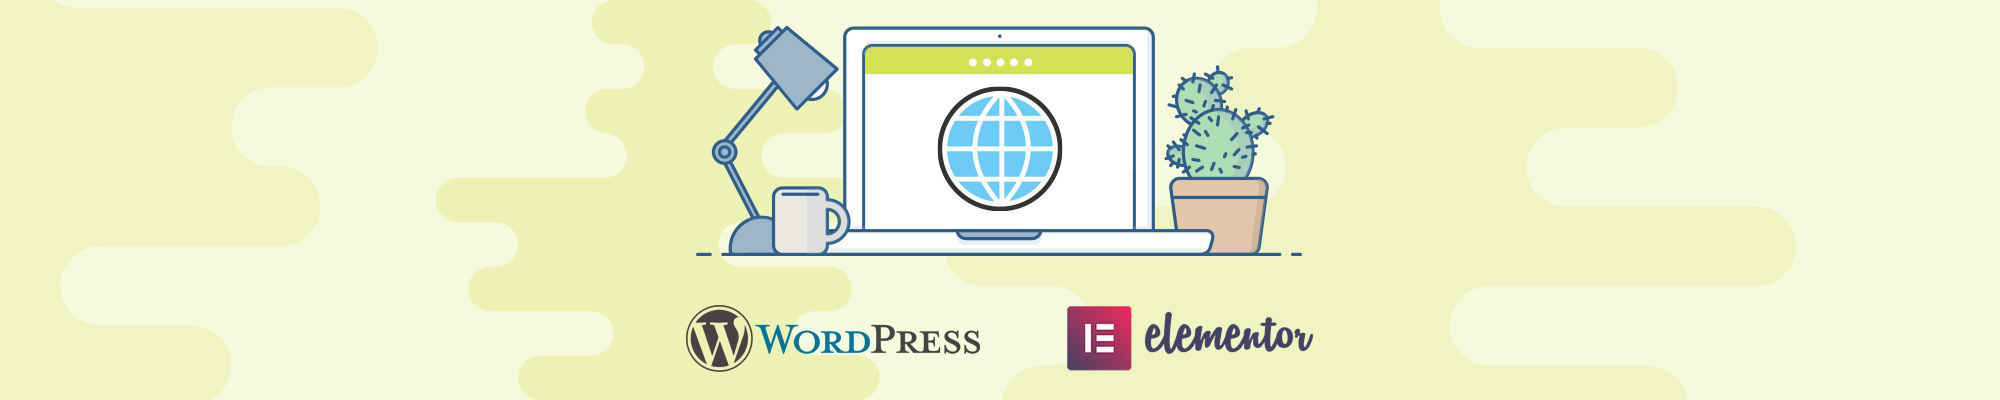 Site WordPress e temas / modelos com Elementor Pro